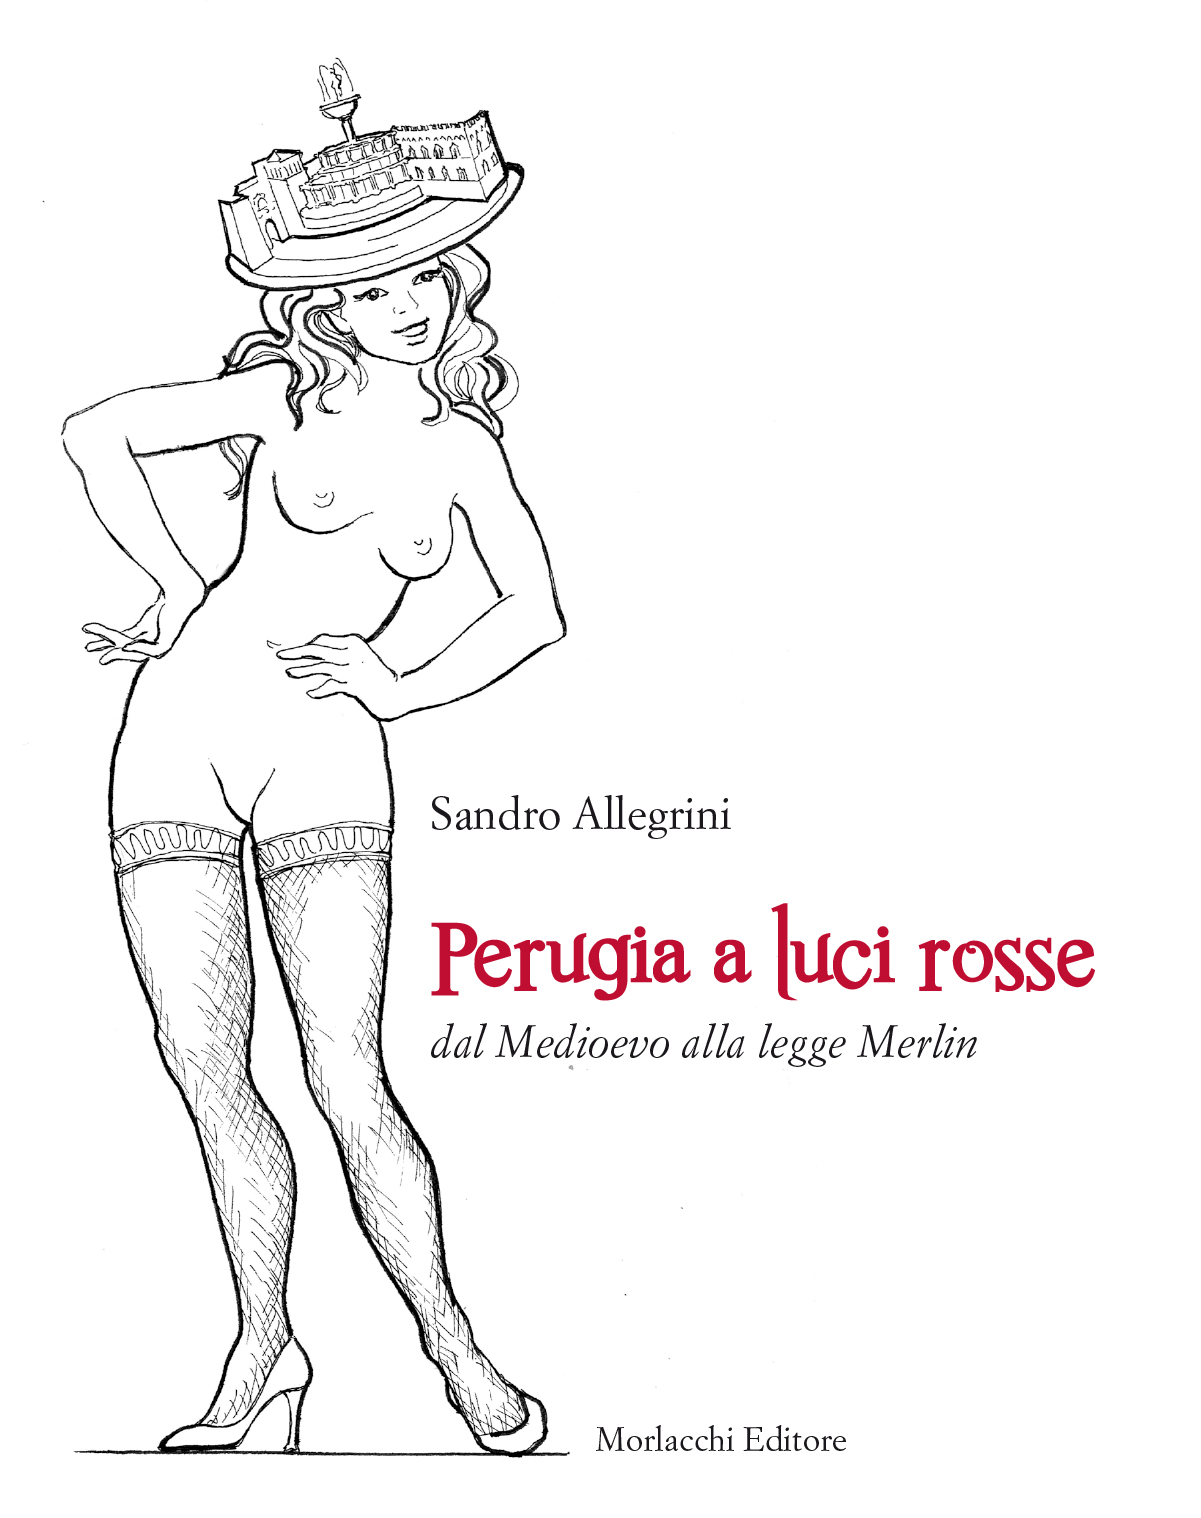 Allegrini Perugia aLuci rosse copertina frontale